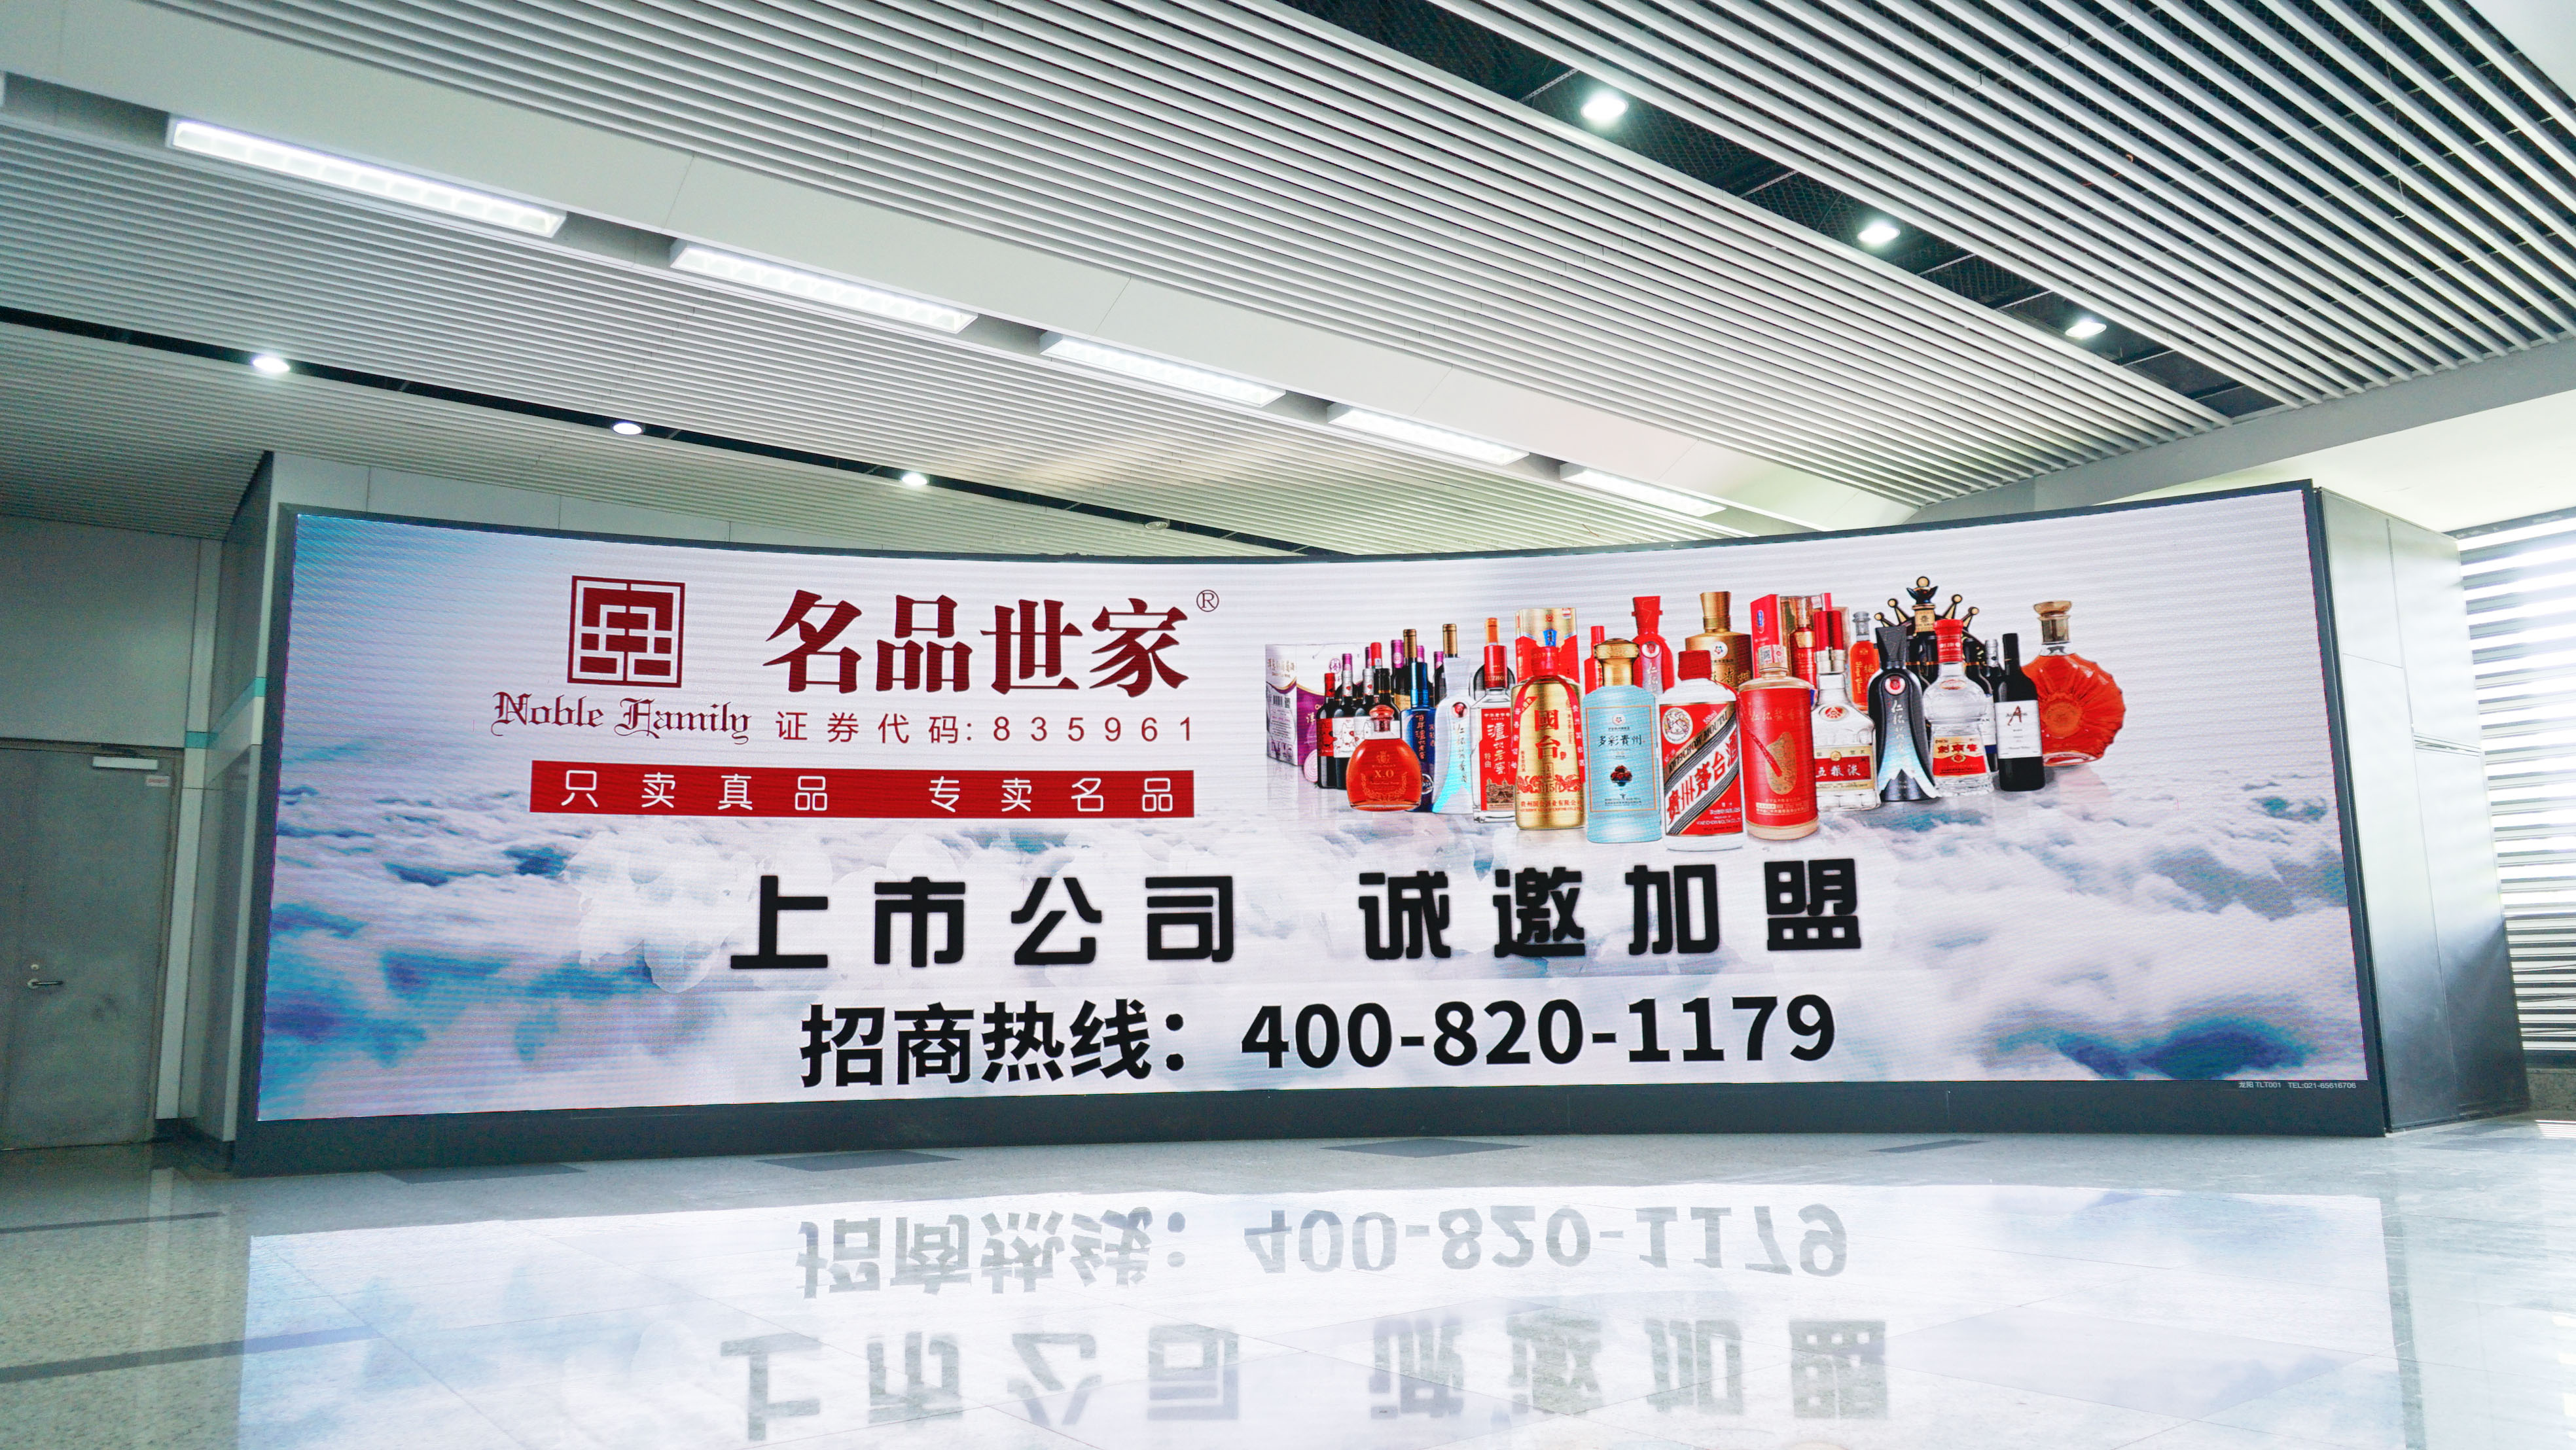 上海地铁广告4.jpg